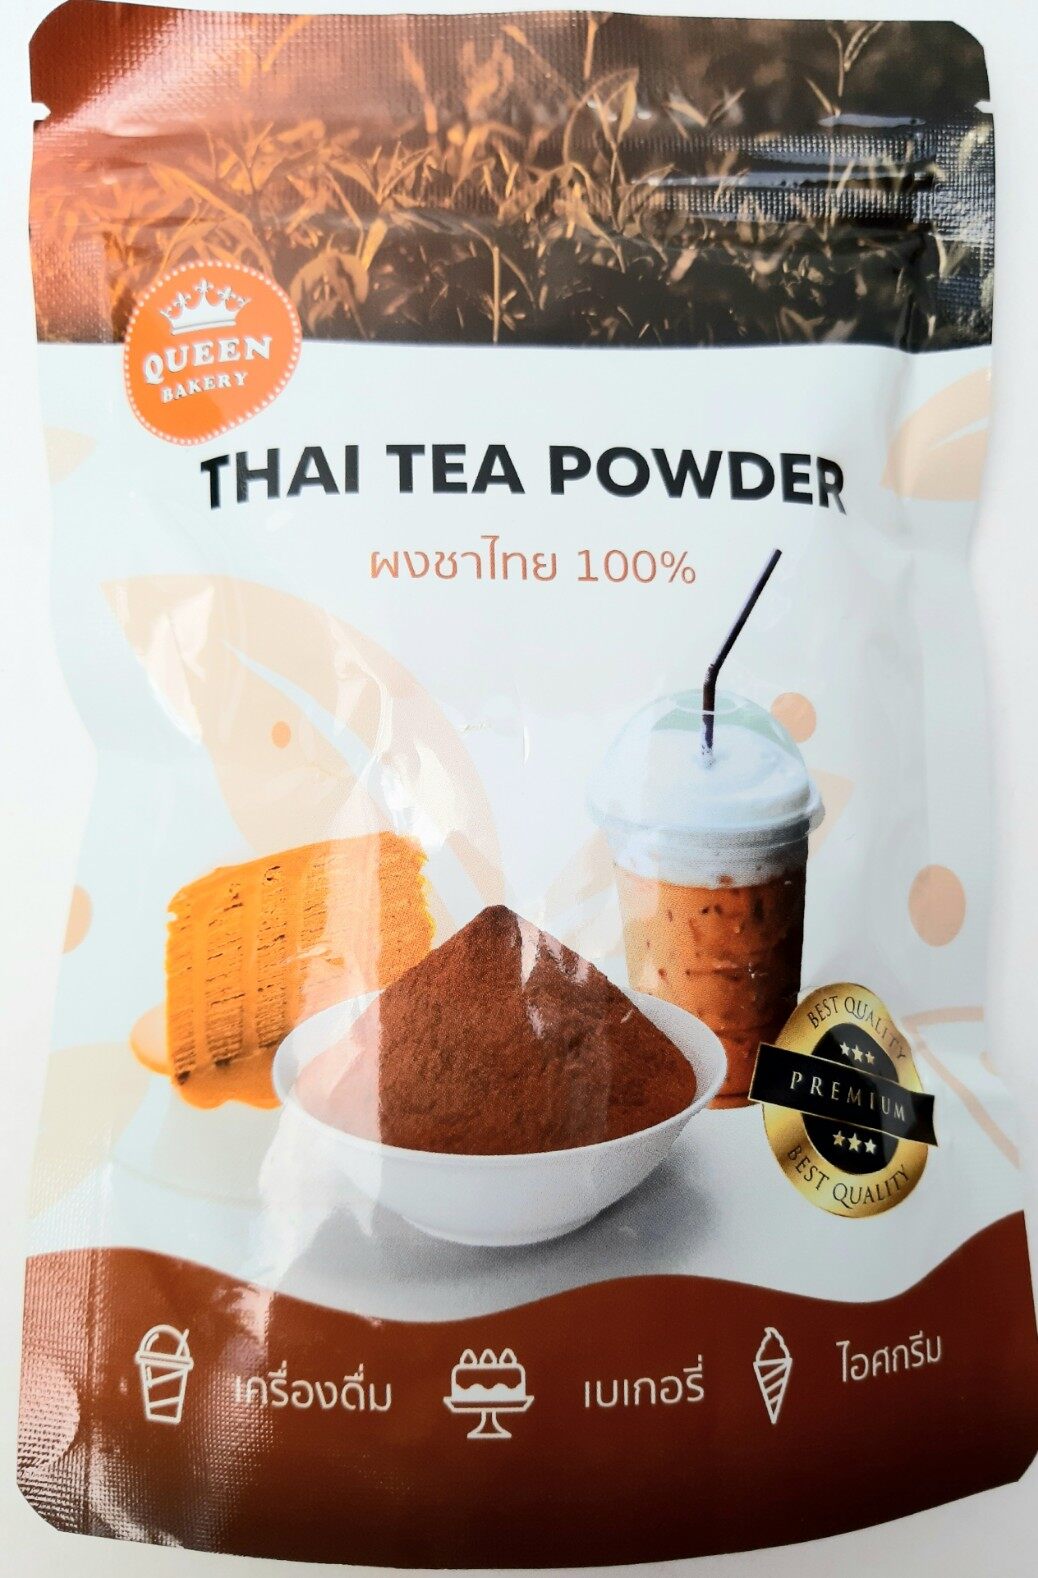 ผงชาไทย 100% Thai tea powder 100% ตรา ควีนเบเกอรี่ ผงชาไทย 100% น้ำหนักสุทธิ 100 กรัม ไม่ผสมนม และน้ำตาล ละลายน้ำโดยไม่ต้องกรองกาก ใหม่ สด สะอาด อร่อย